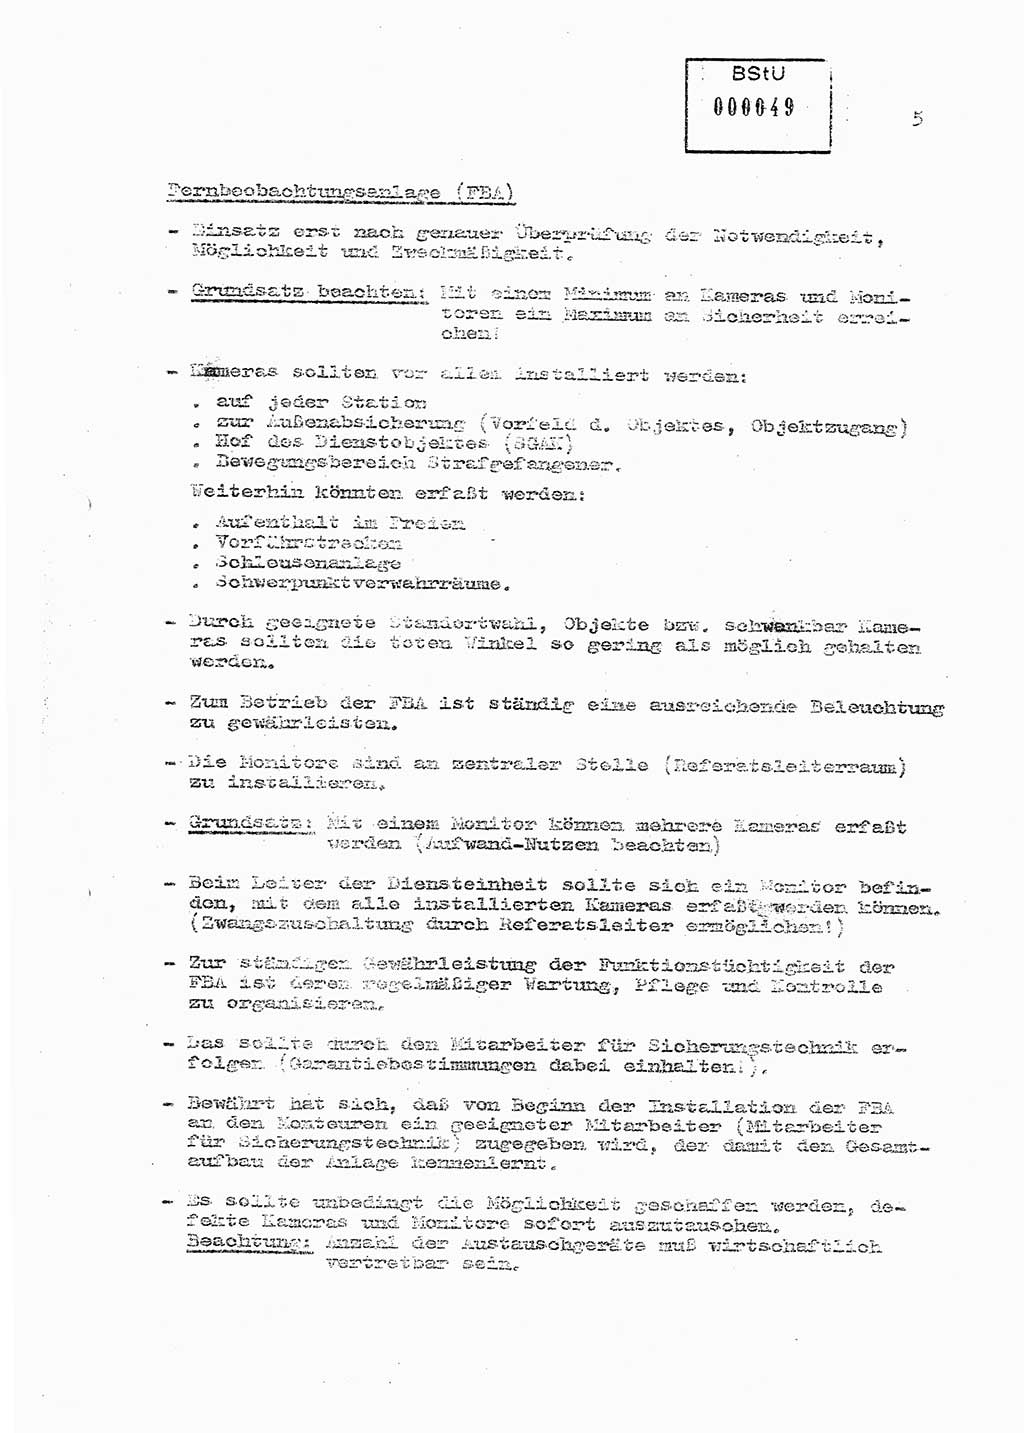 Sicherungs- und Nachrichtentechnik in UHA [Untersuchungshaftanstalten, Ministerium für Staatssicherheit, Deutsche Demokratische Republik (DDR)], Abteilung (Abt.) ⅩⅣ, Berlin 1980, Seite 5 (Si.-NT UHA MfS DDR Abt. ⅩⅣ /80 1980, S. 5)